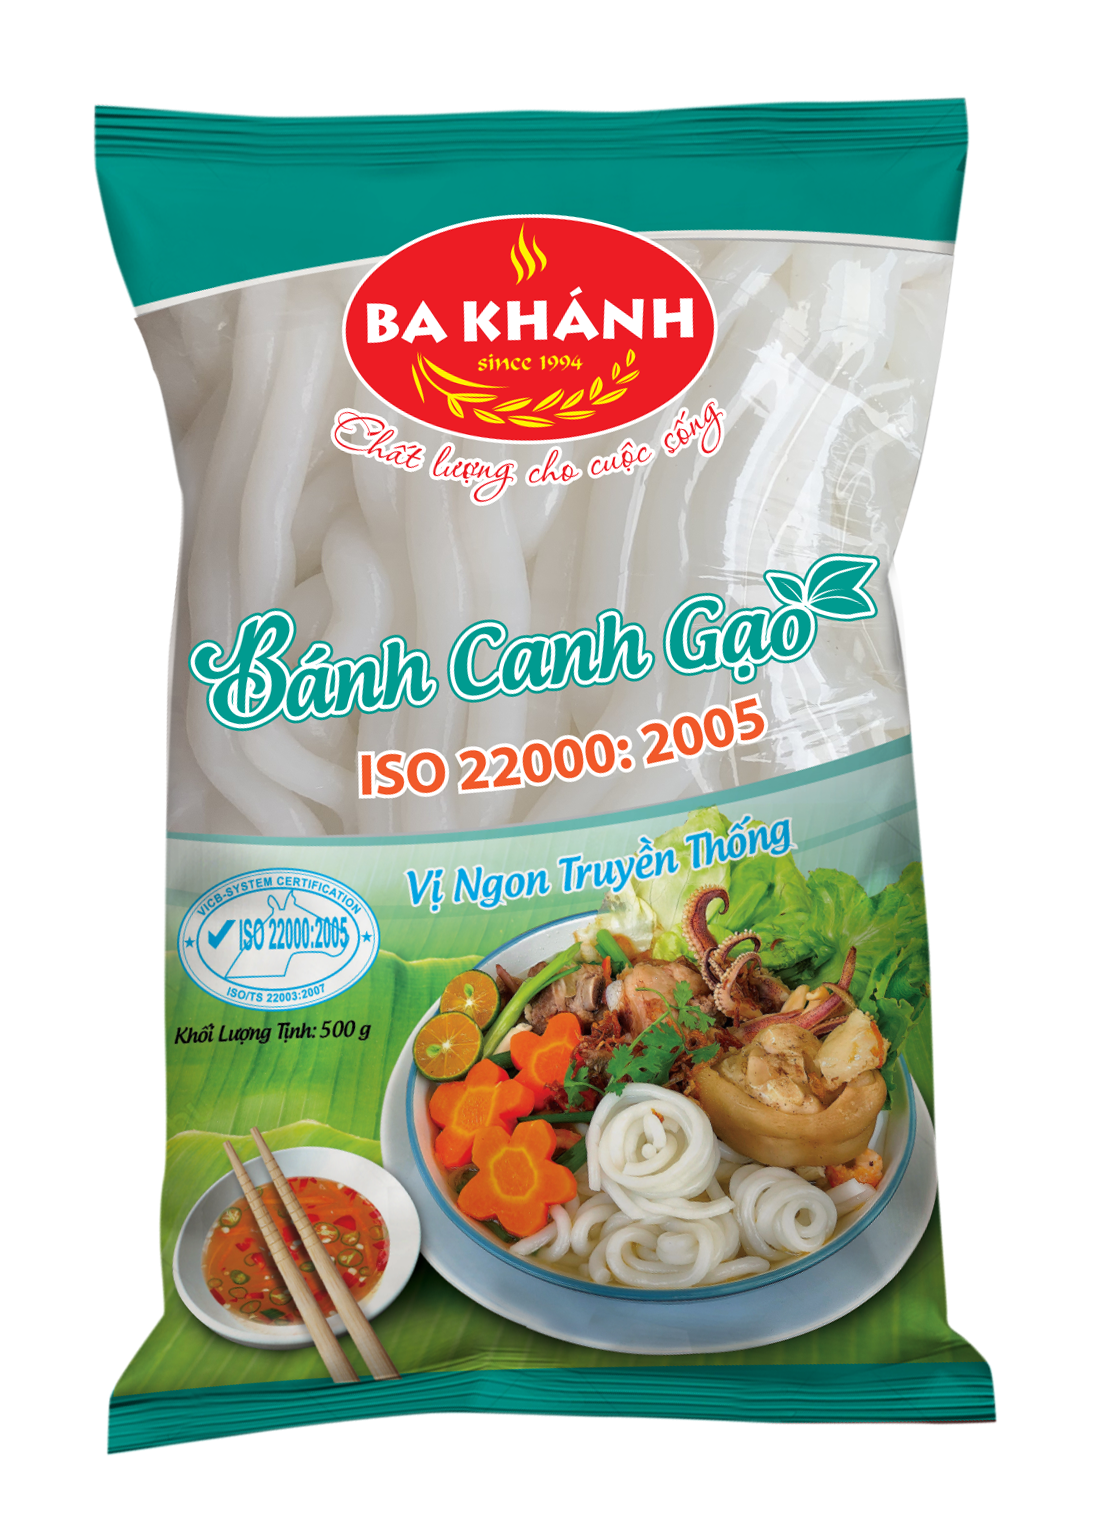 Ba Khanh Fresh Banh Canh Gao (100g)